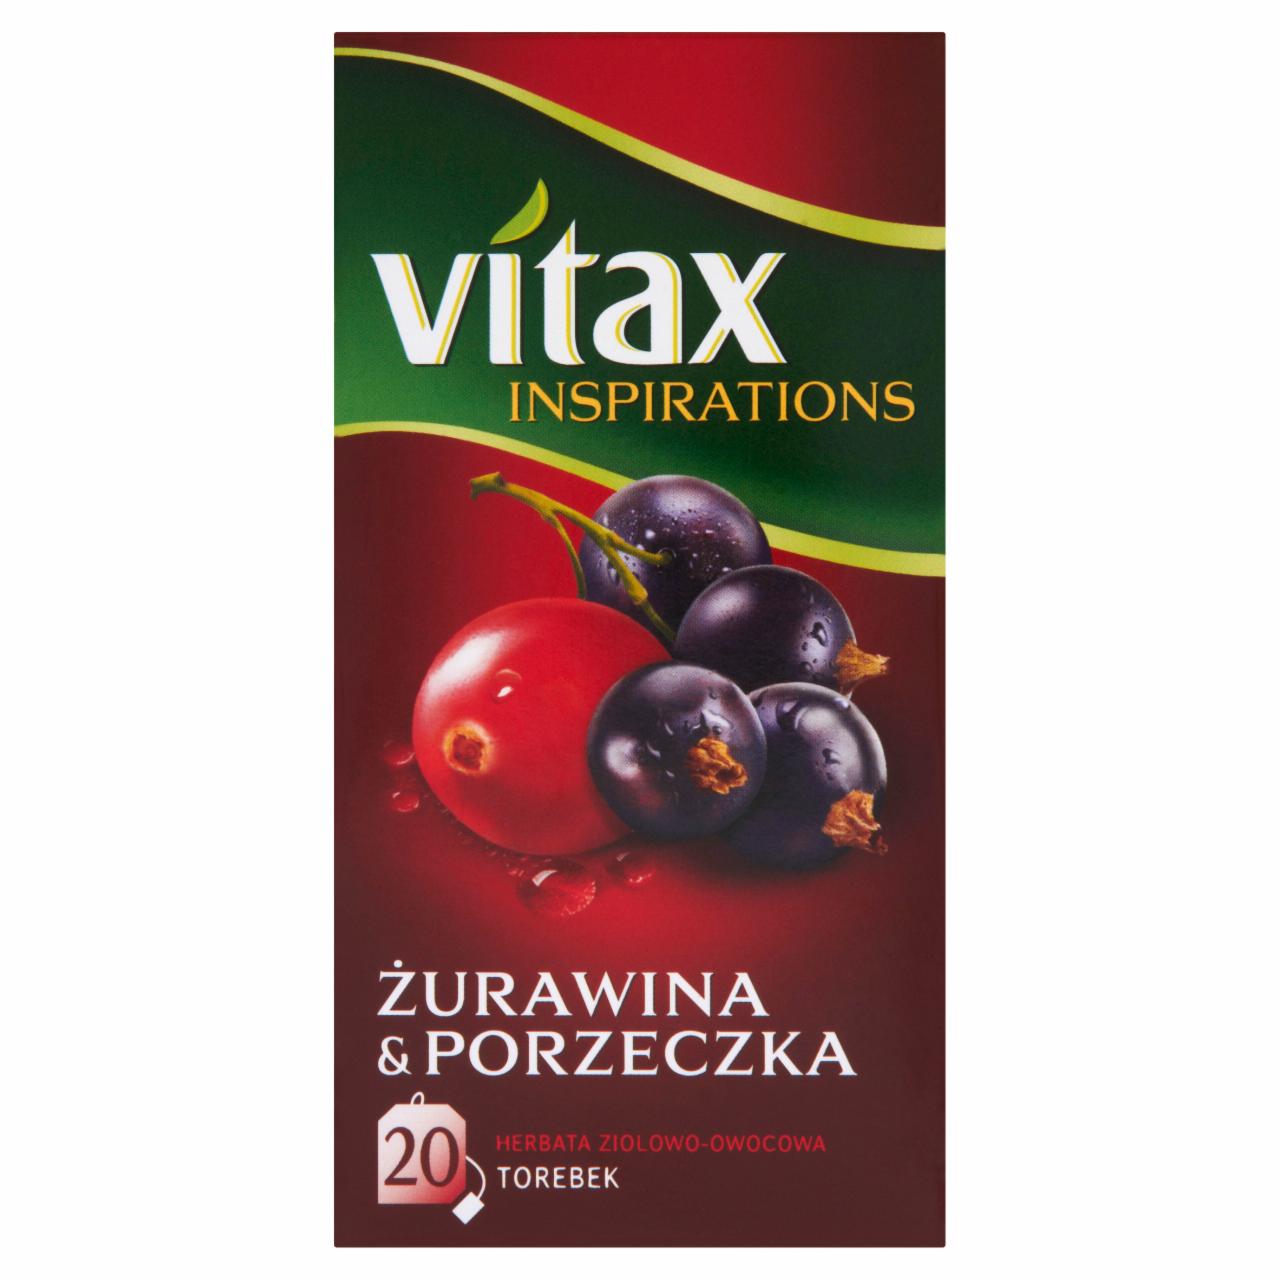 Zdjęcia - Vitax Inspirations Żurawina and Porzeczka Herbata ziołowo-owocowa 40 g ( 20 torebek)